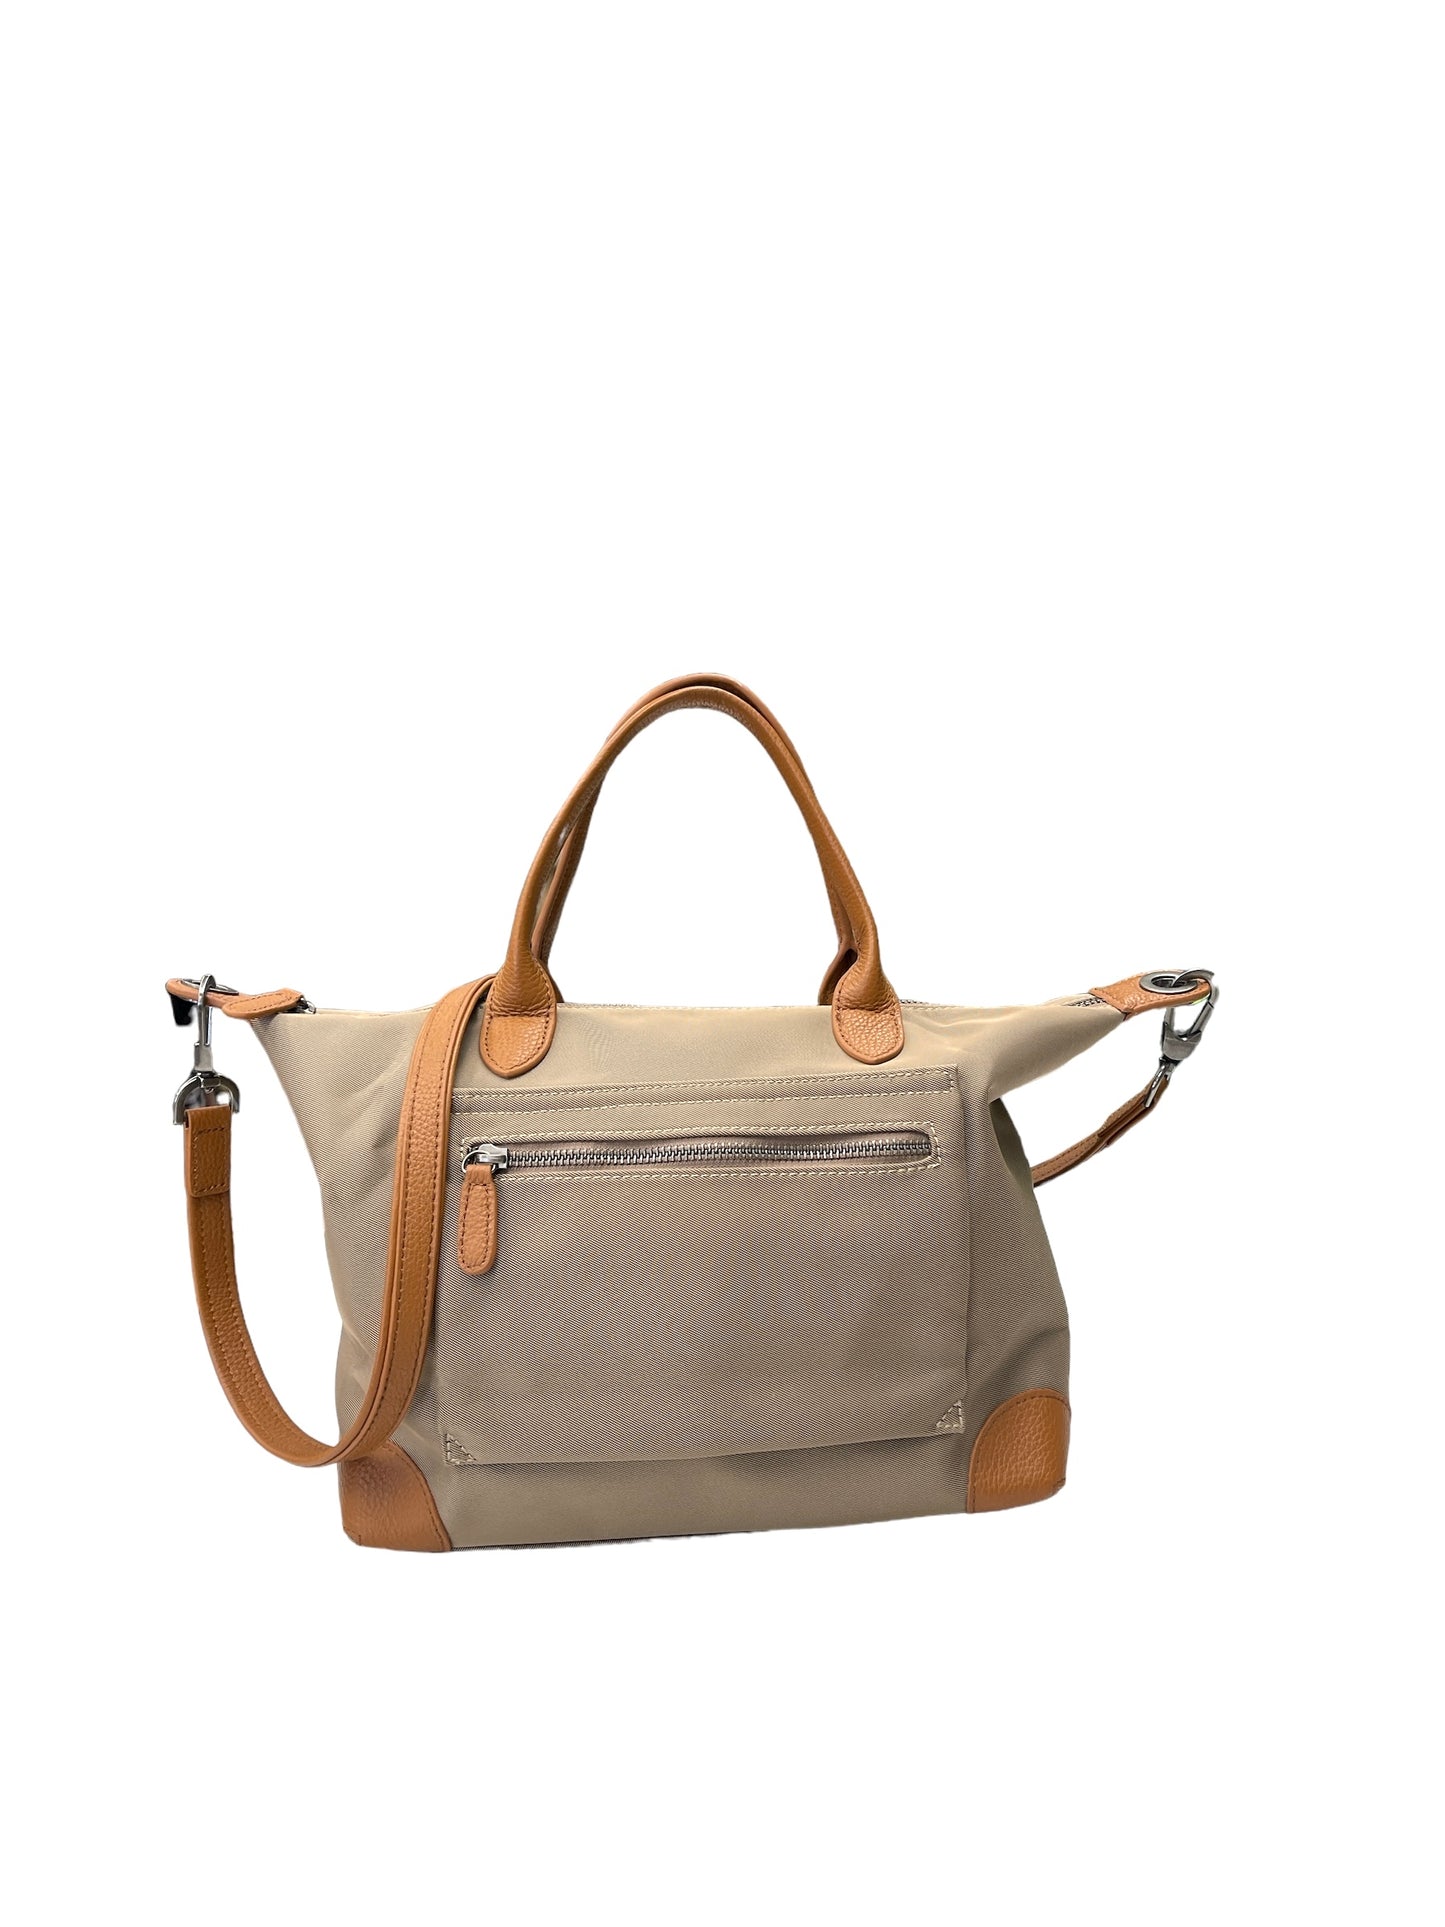 Handbag By Doris & Jacky  Size: Large